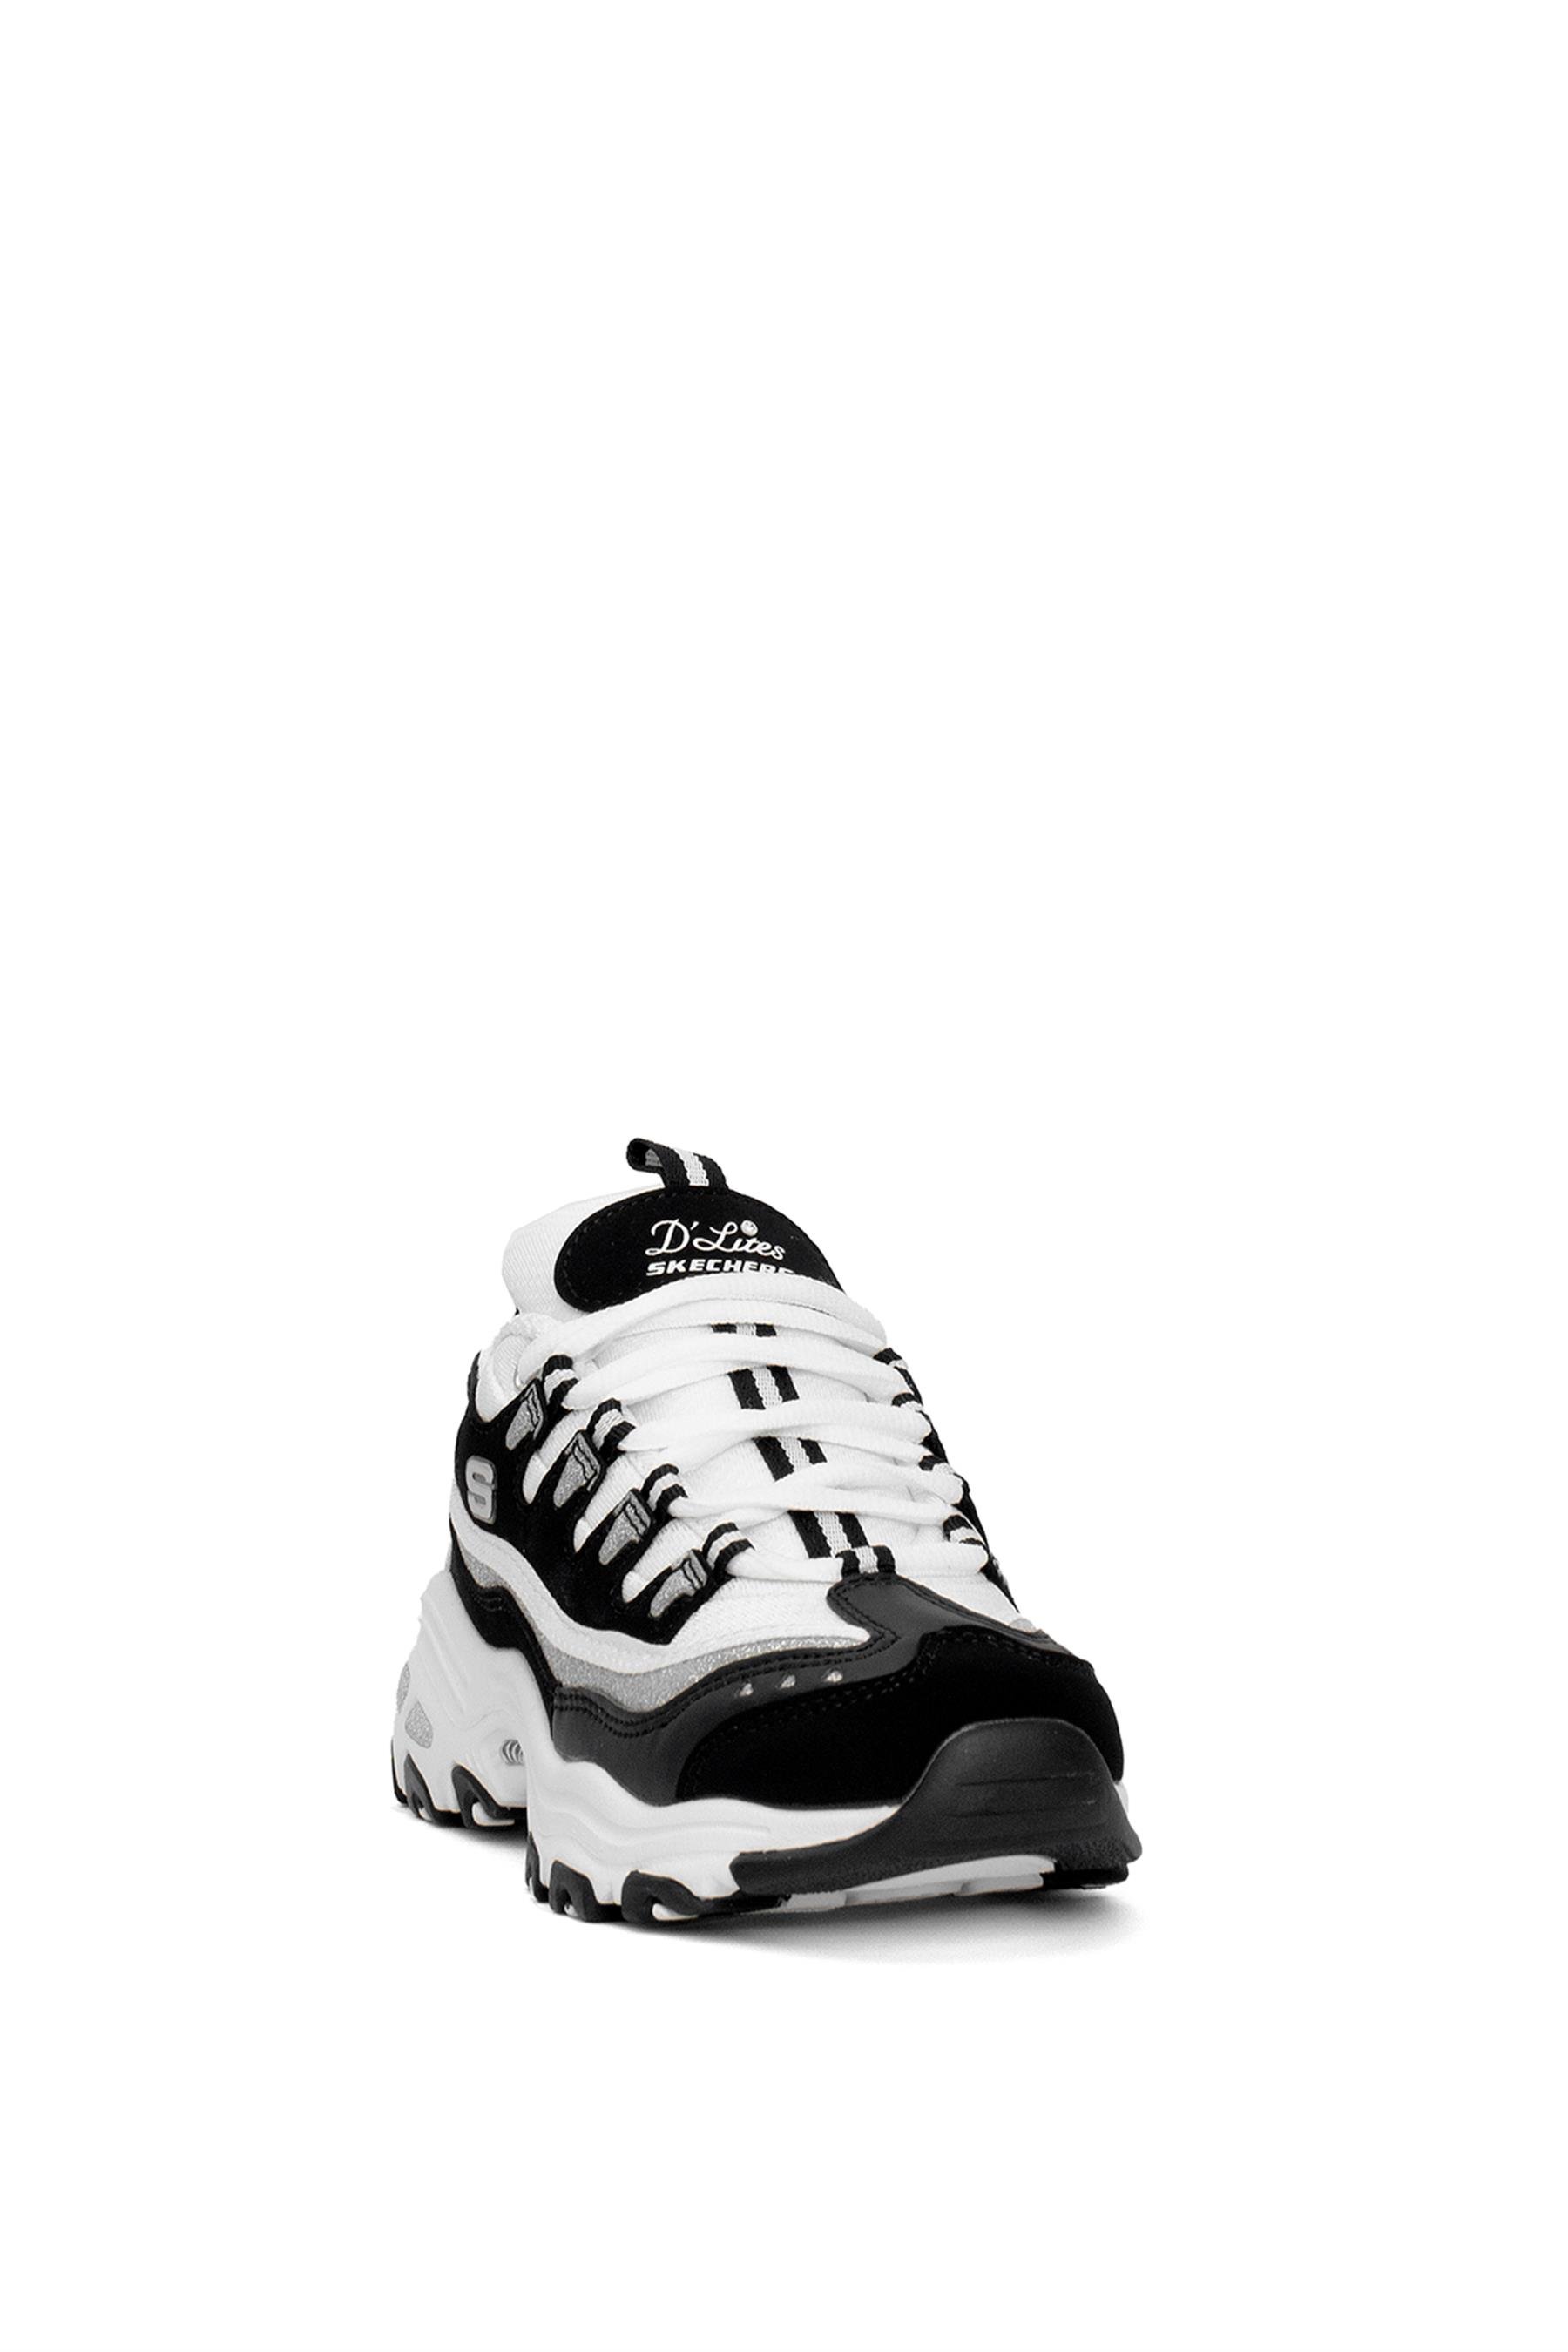 Skechers D'lites Fresh Start 11914 Kadın Sneakers Beyaz - Siyah - Ayakkabı  Fuarı Elit